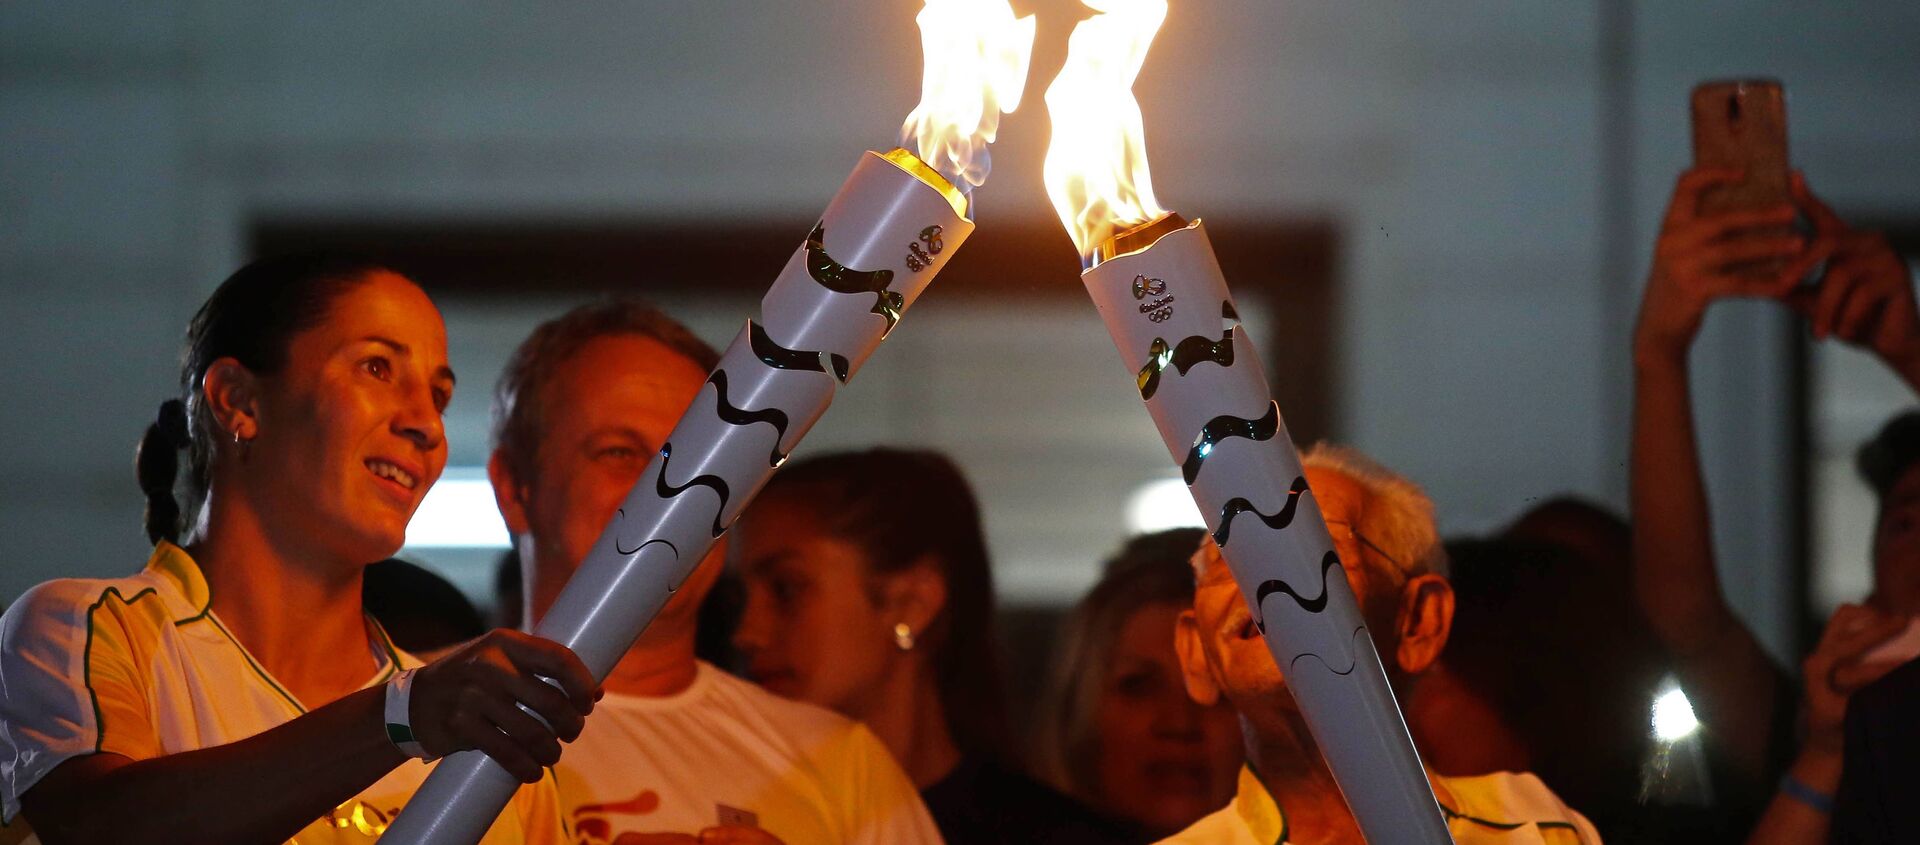 Спортсмены участвуют в эстафете олимпийского огня в Бразилии - Sputnik Грузия, 1920, 03.06.2021